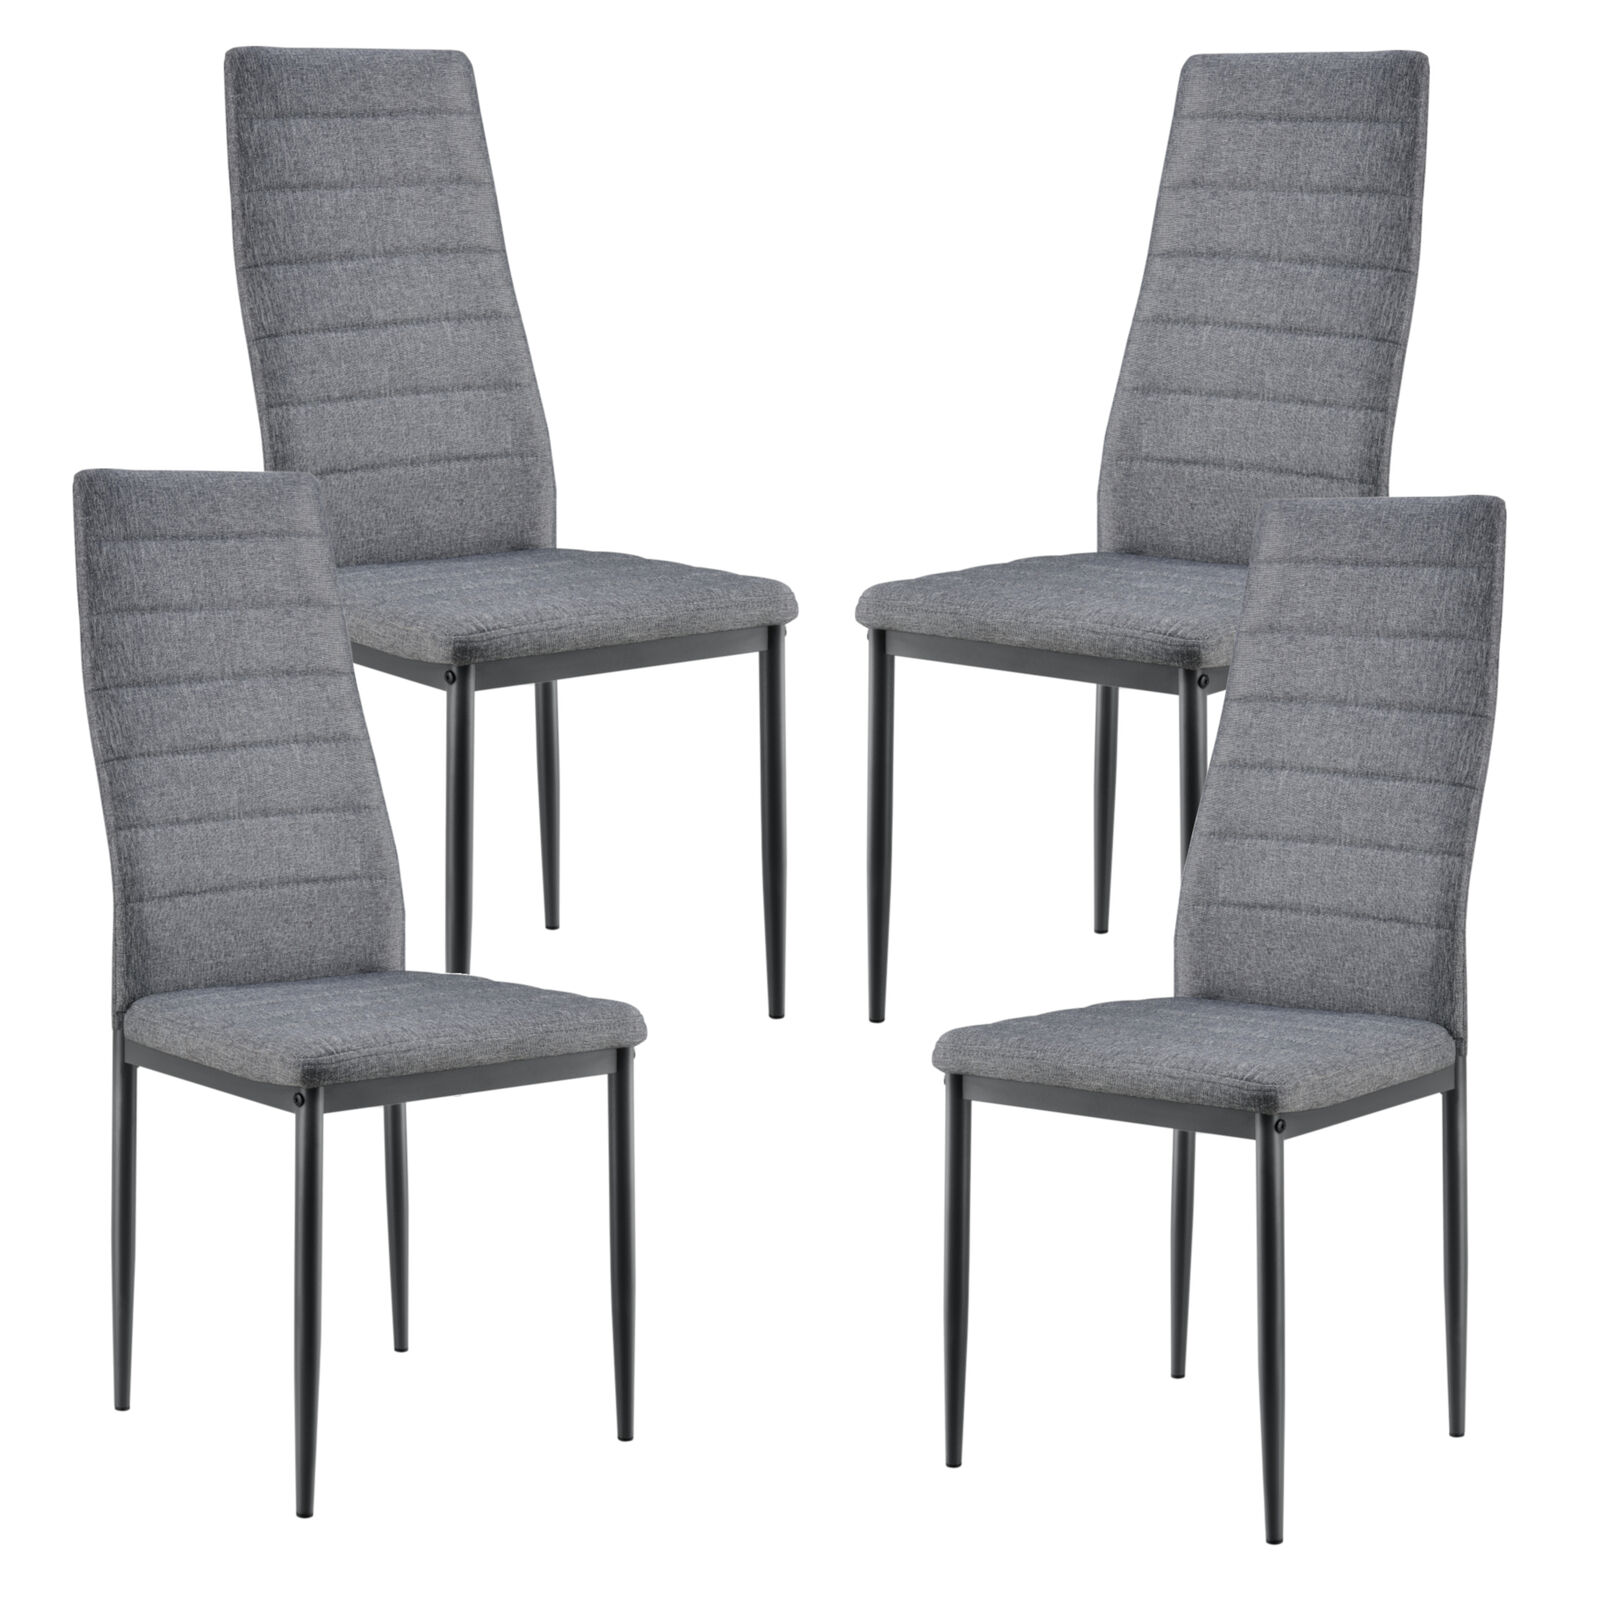 [en.casa] Esstisch weiß mit 4 Stühlen grau Küchentisch Esszimmertisch 120x60cm